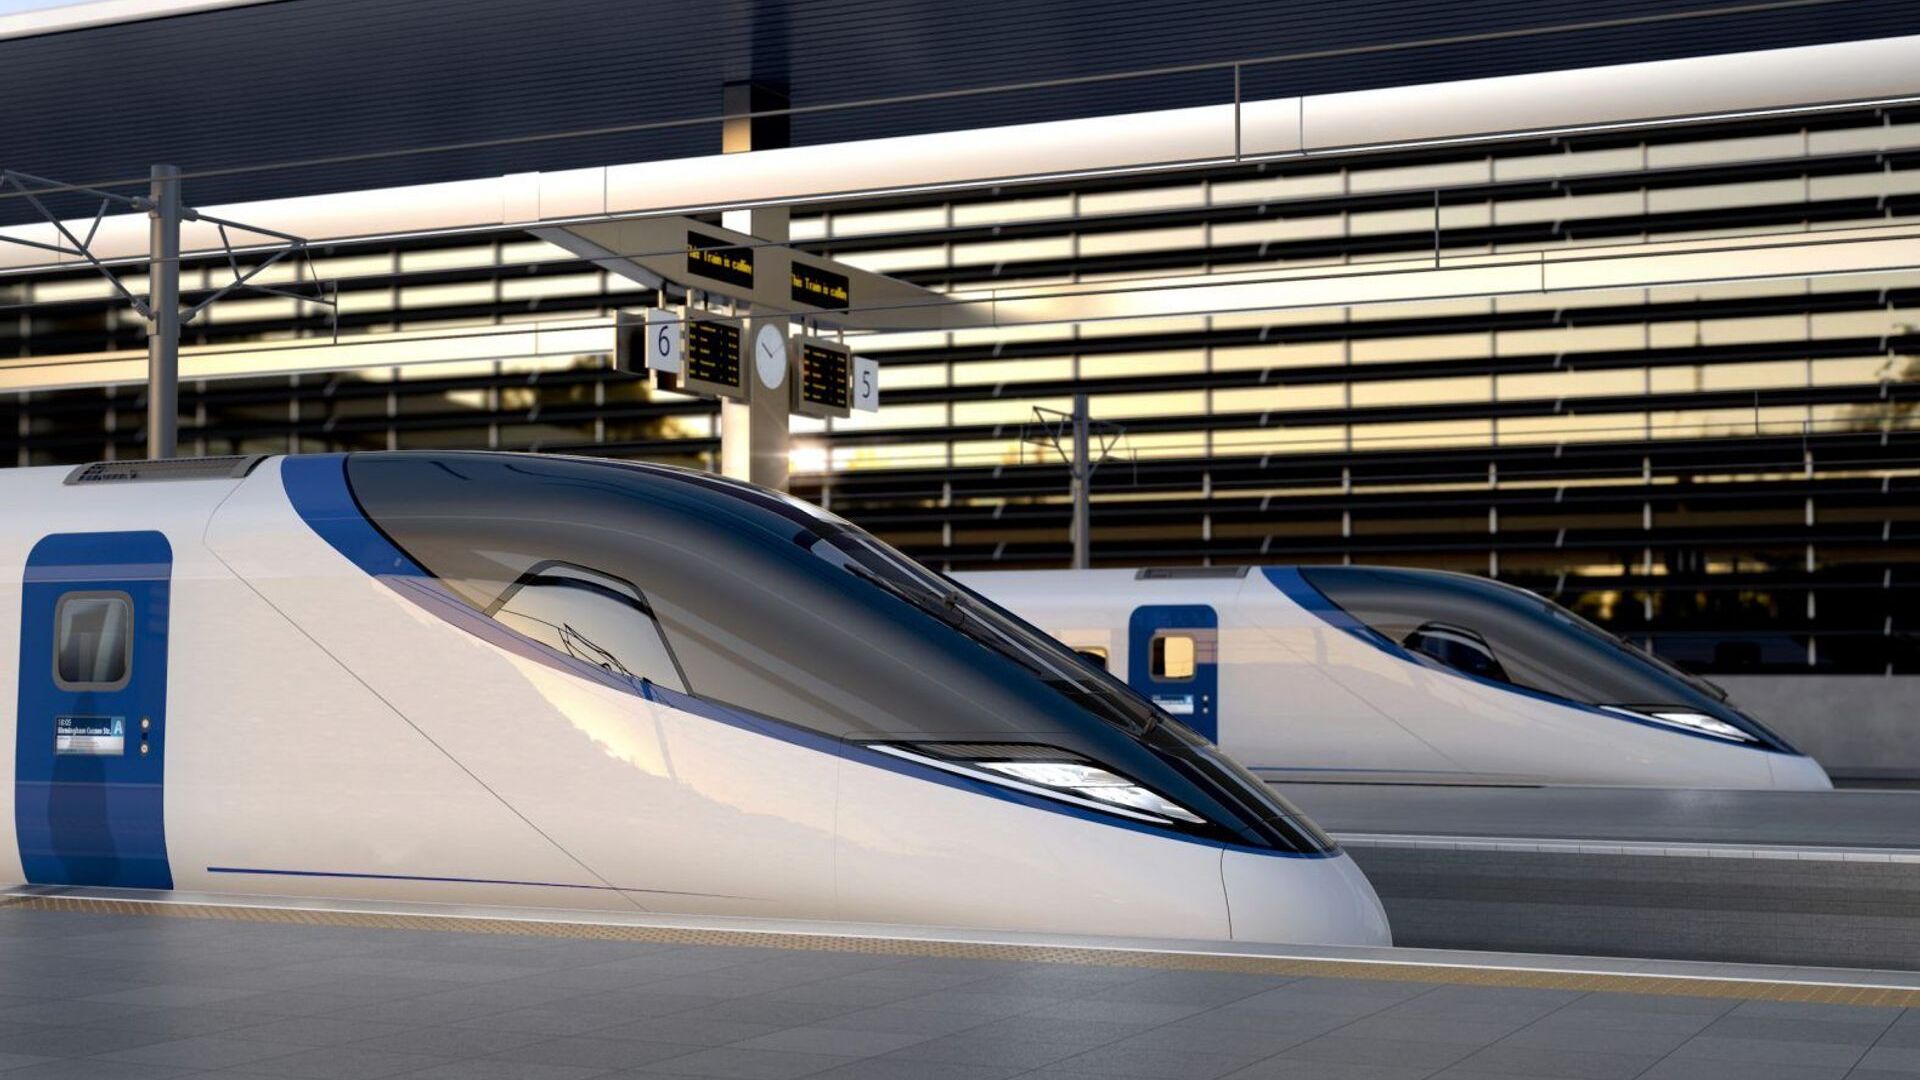 Lo HS2 (High Speed 2) è un progetto di alta velocità ferroviaria lanciato dal Governo britannico per collegare le città del Regno